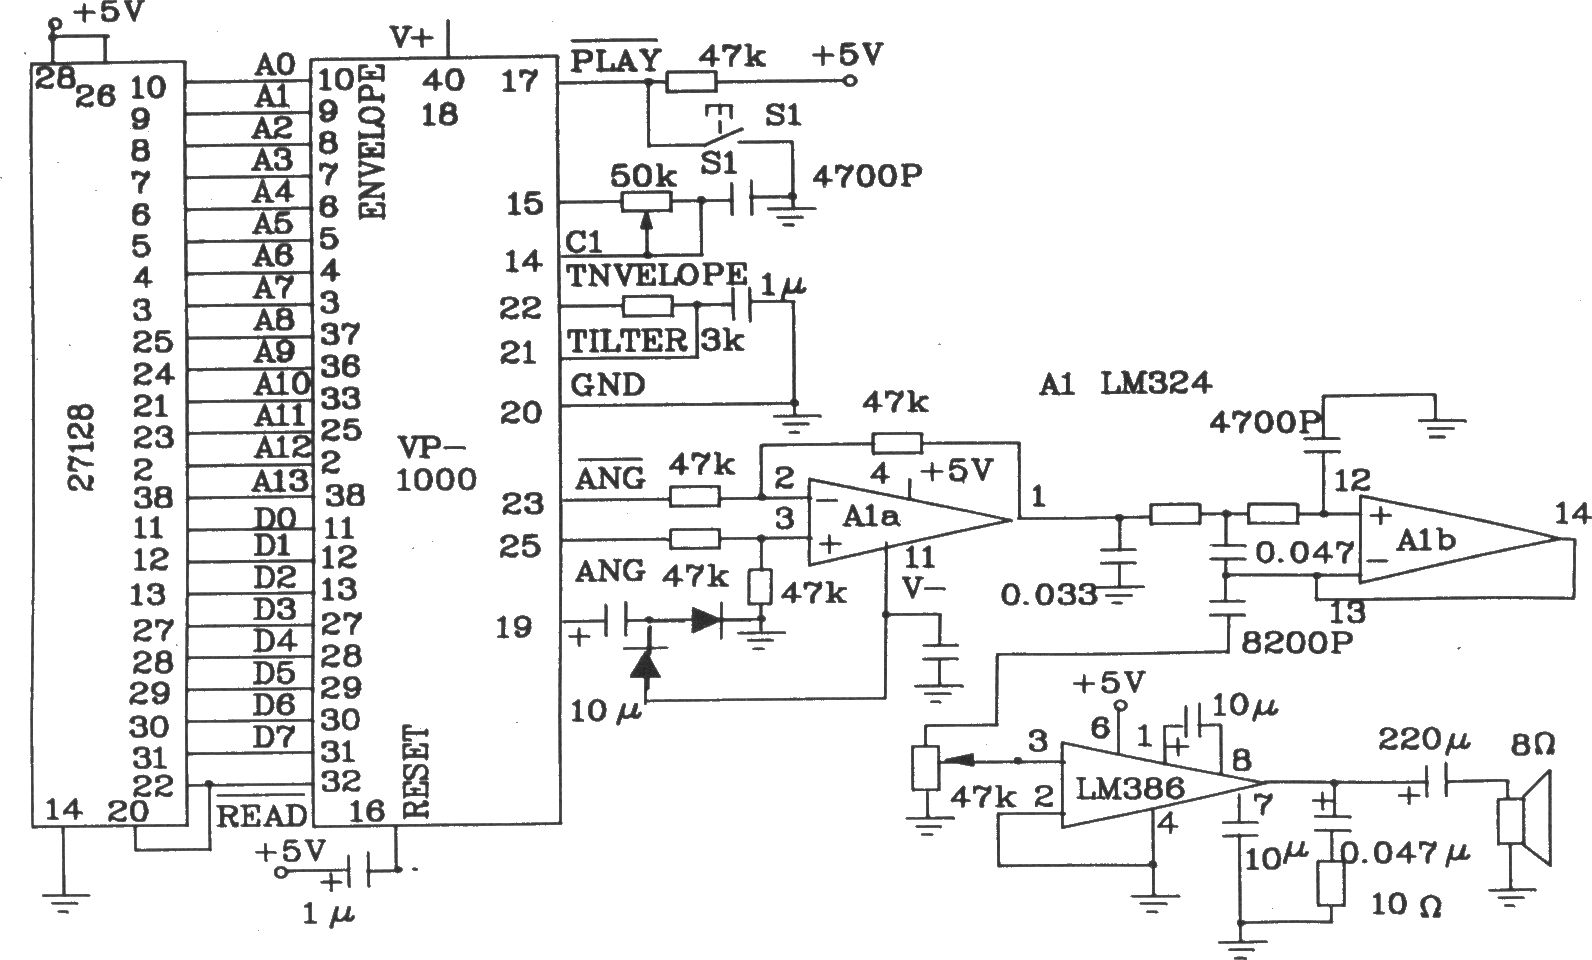 语音合成芯片VP-1000和EEPROM组成的放音电路图